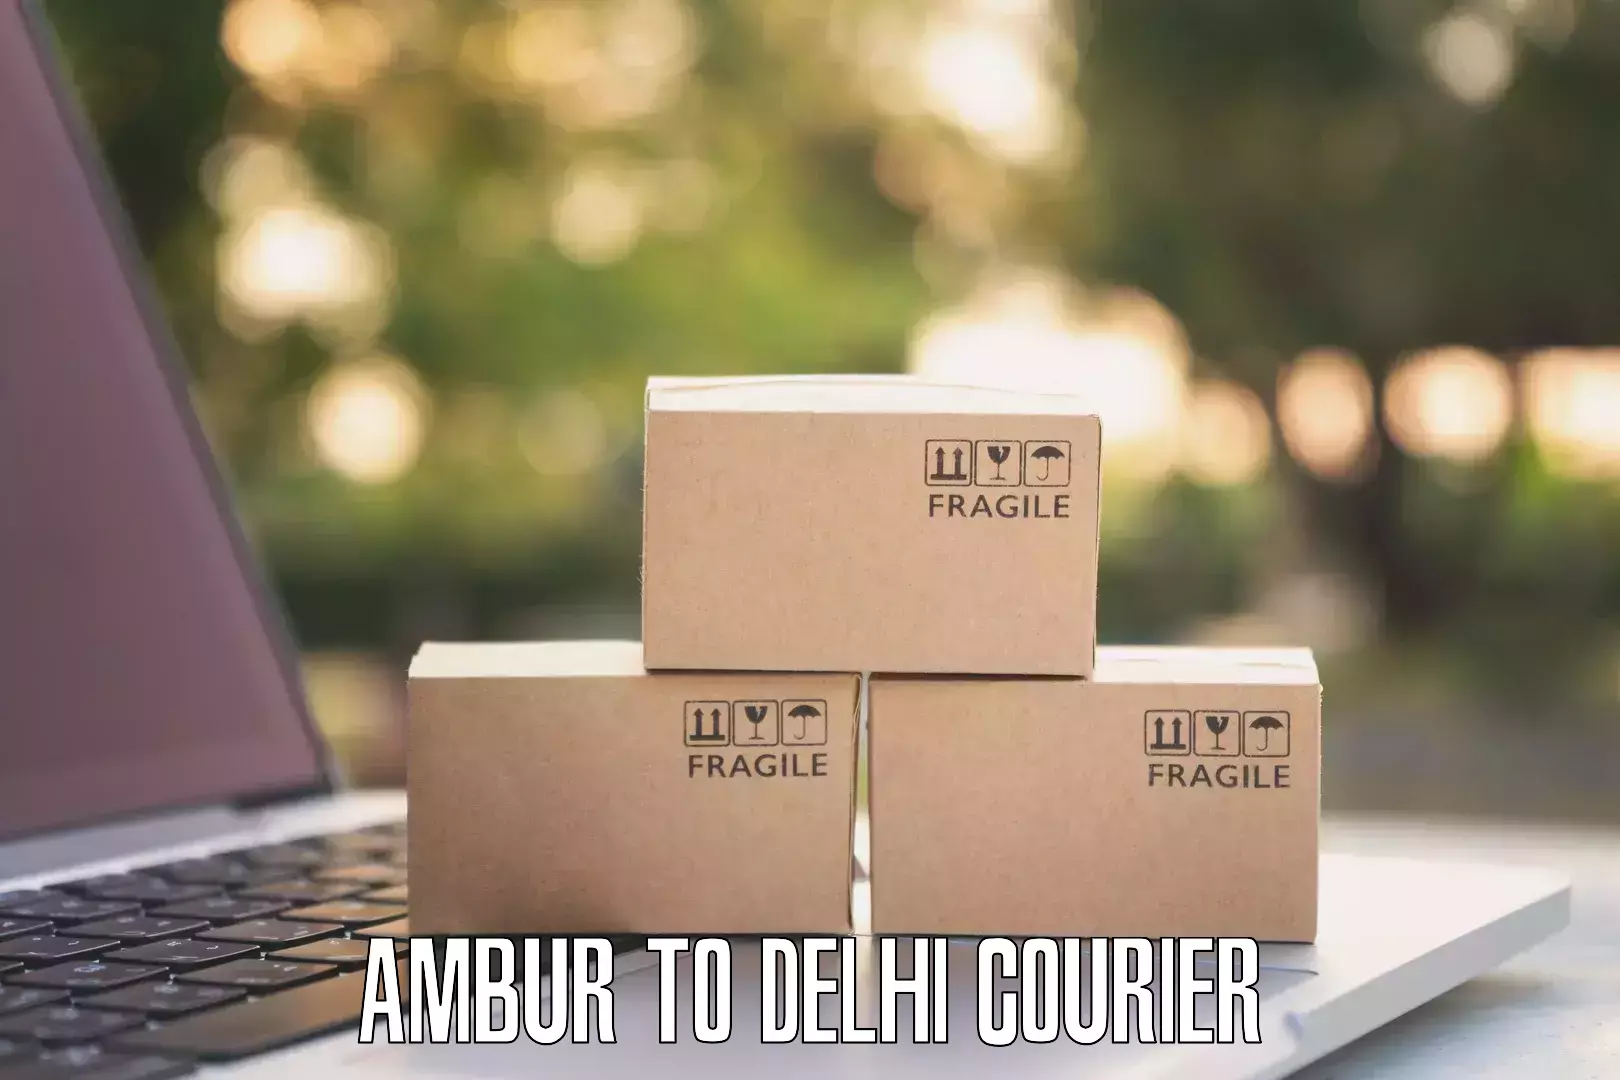 Courier rate comparison Ambur to Lodhi Road